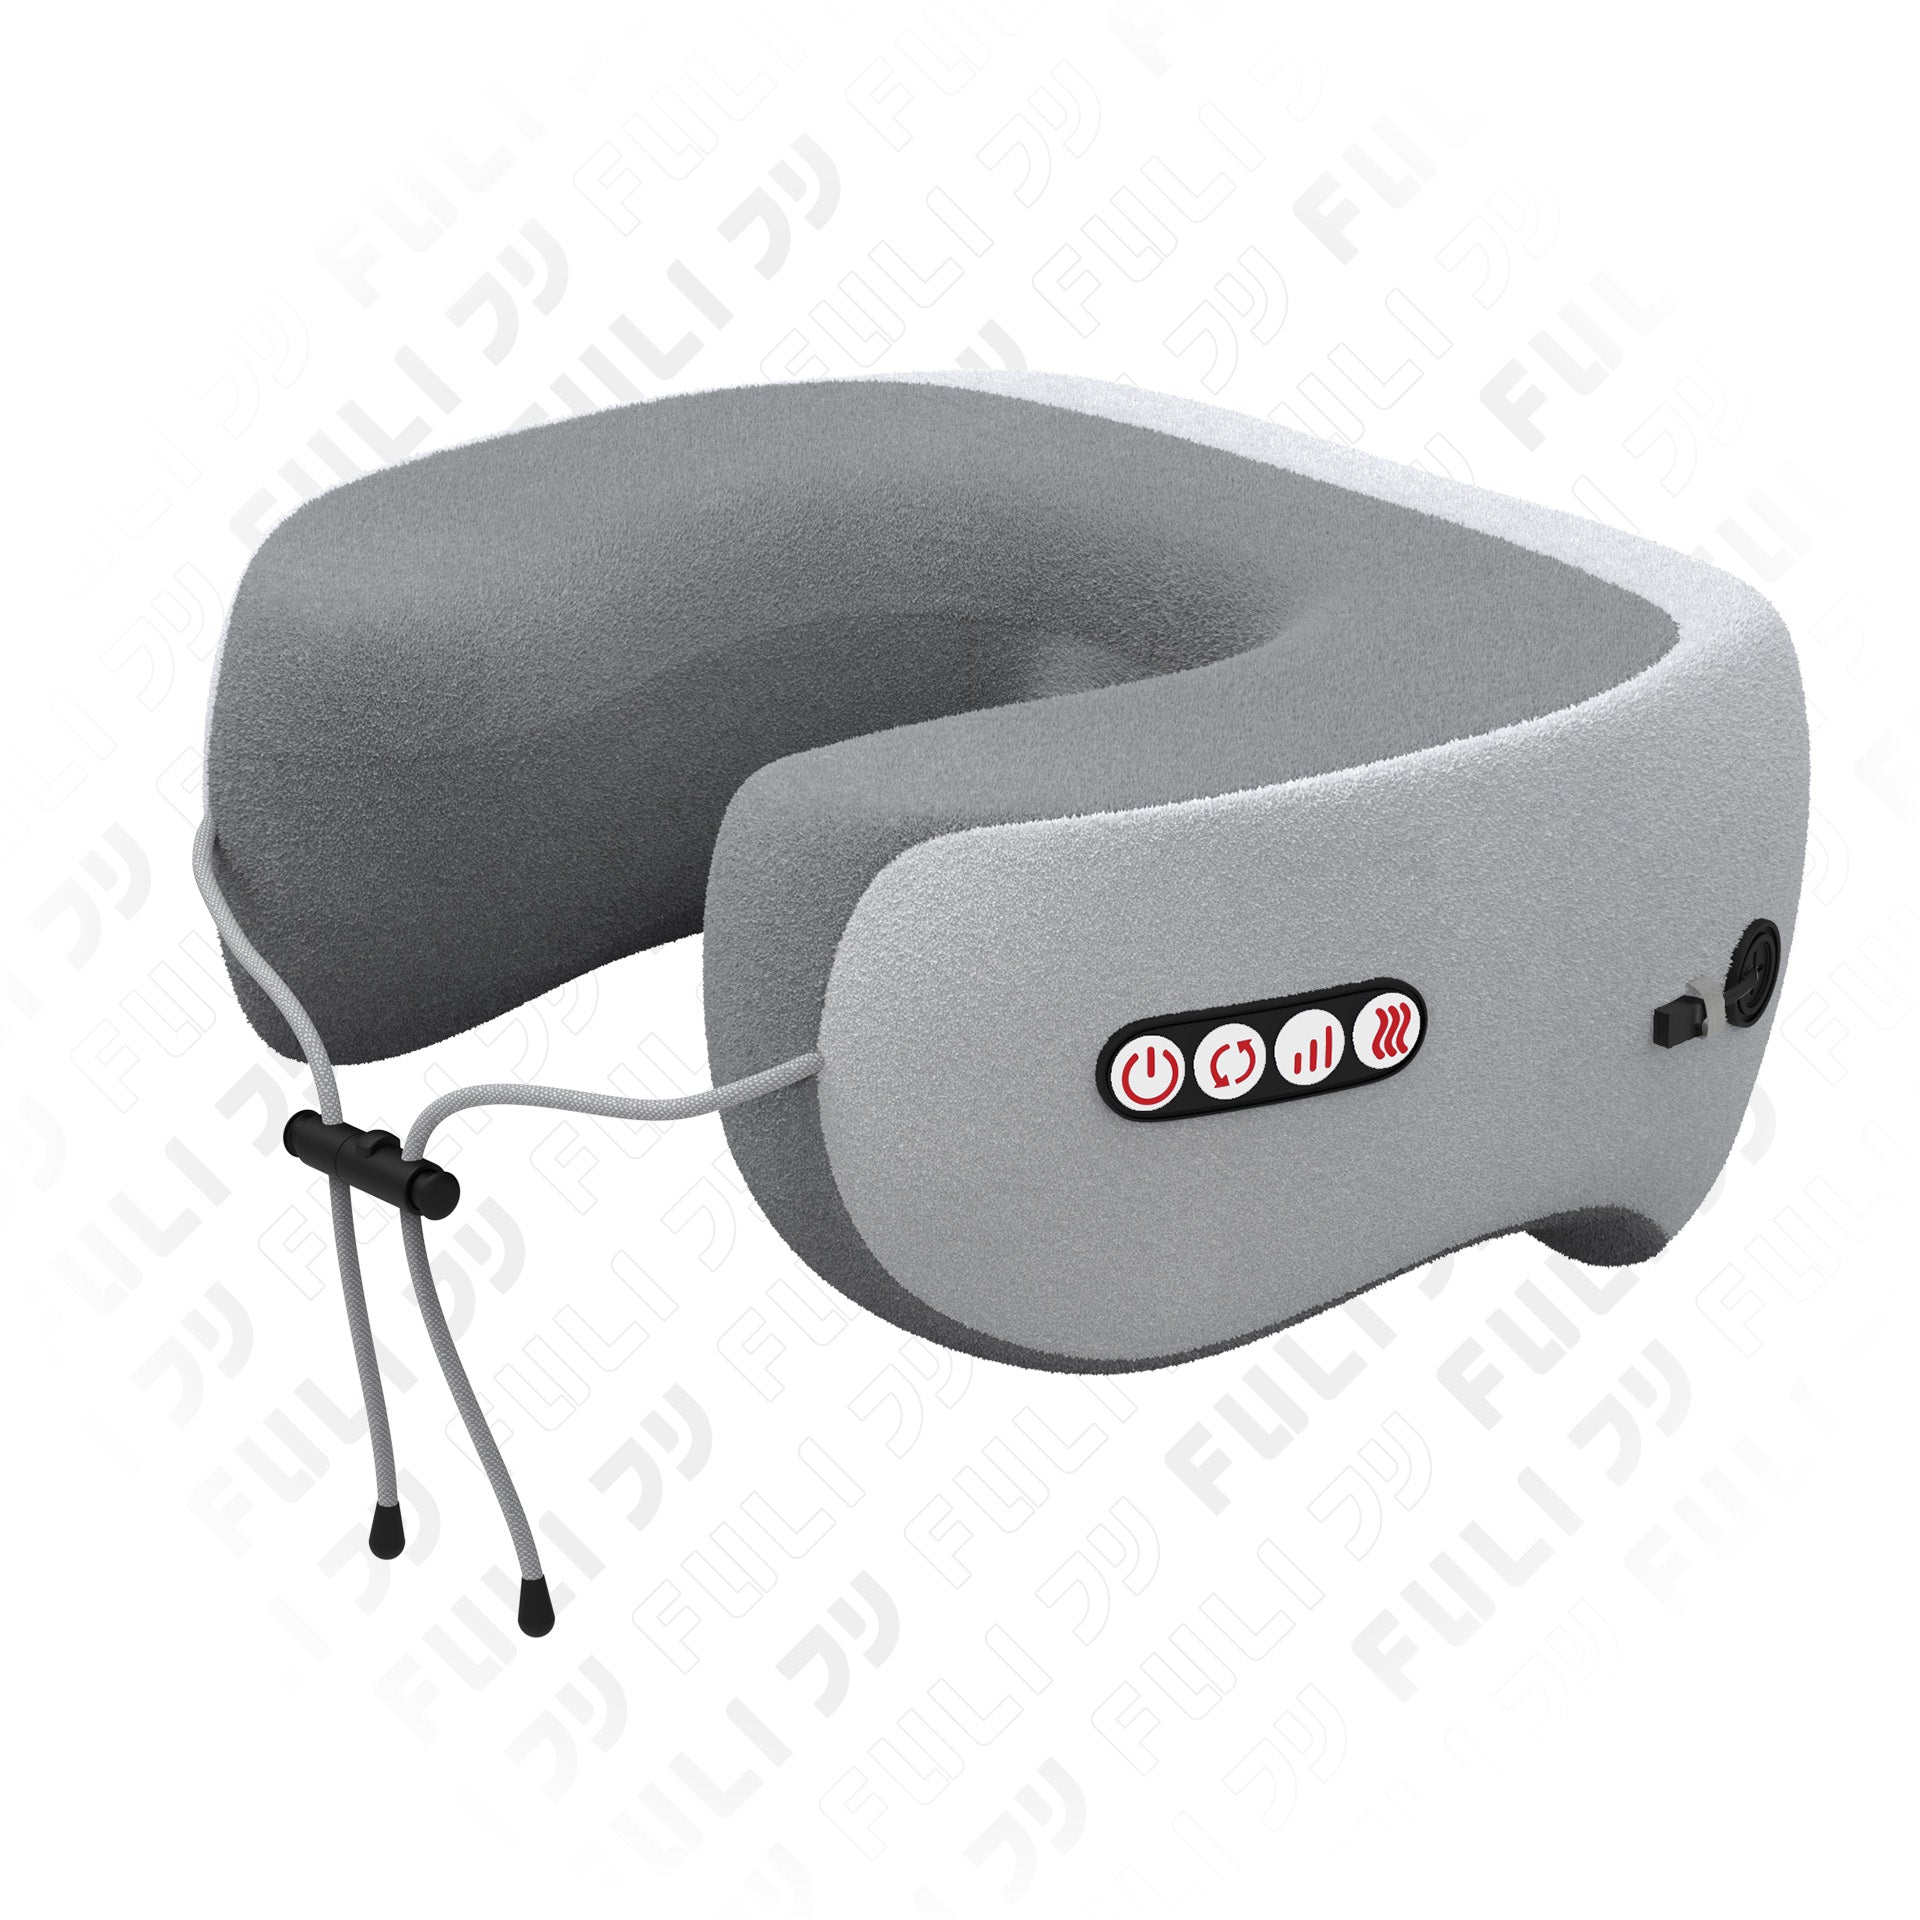 เซตหน้าใสสบายต้นคอ FULI Smart Hot and Cold Ultrasonic Facial Treatment Device +Ergo Massage Neck Pillow